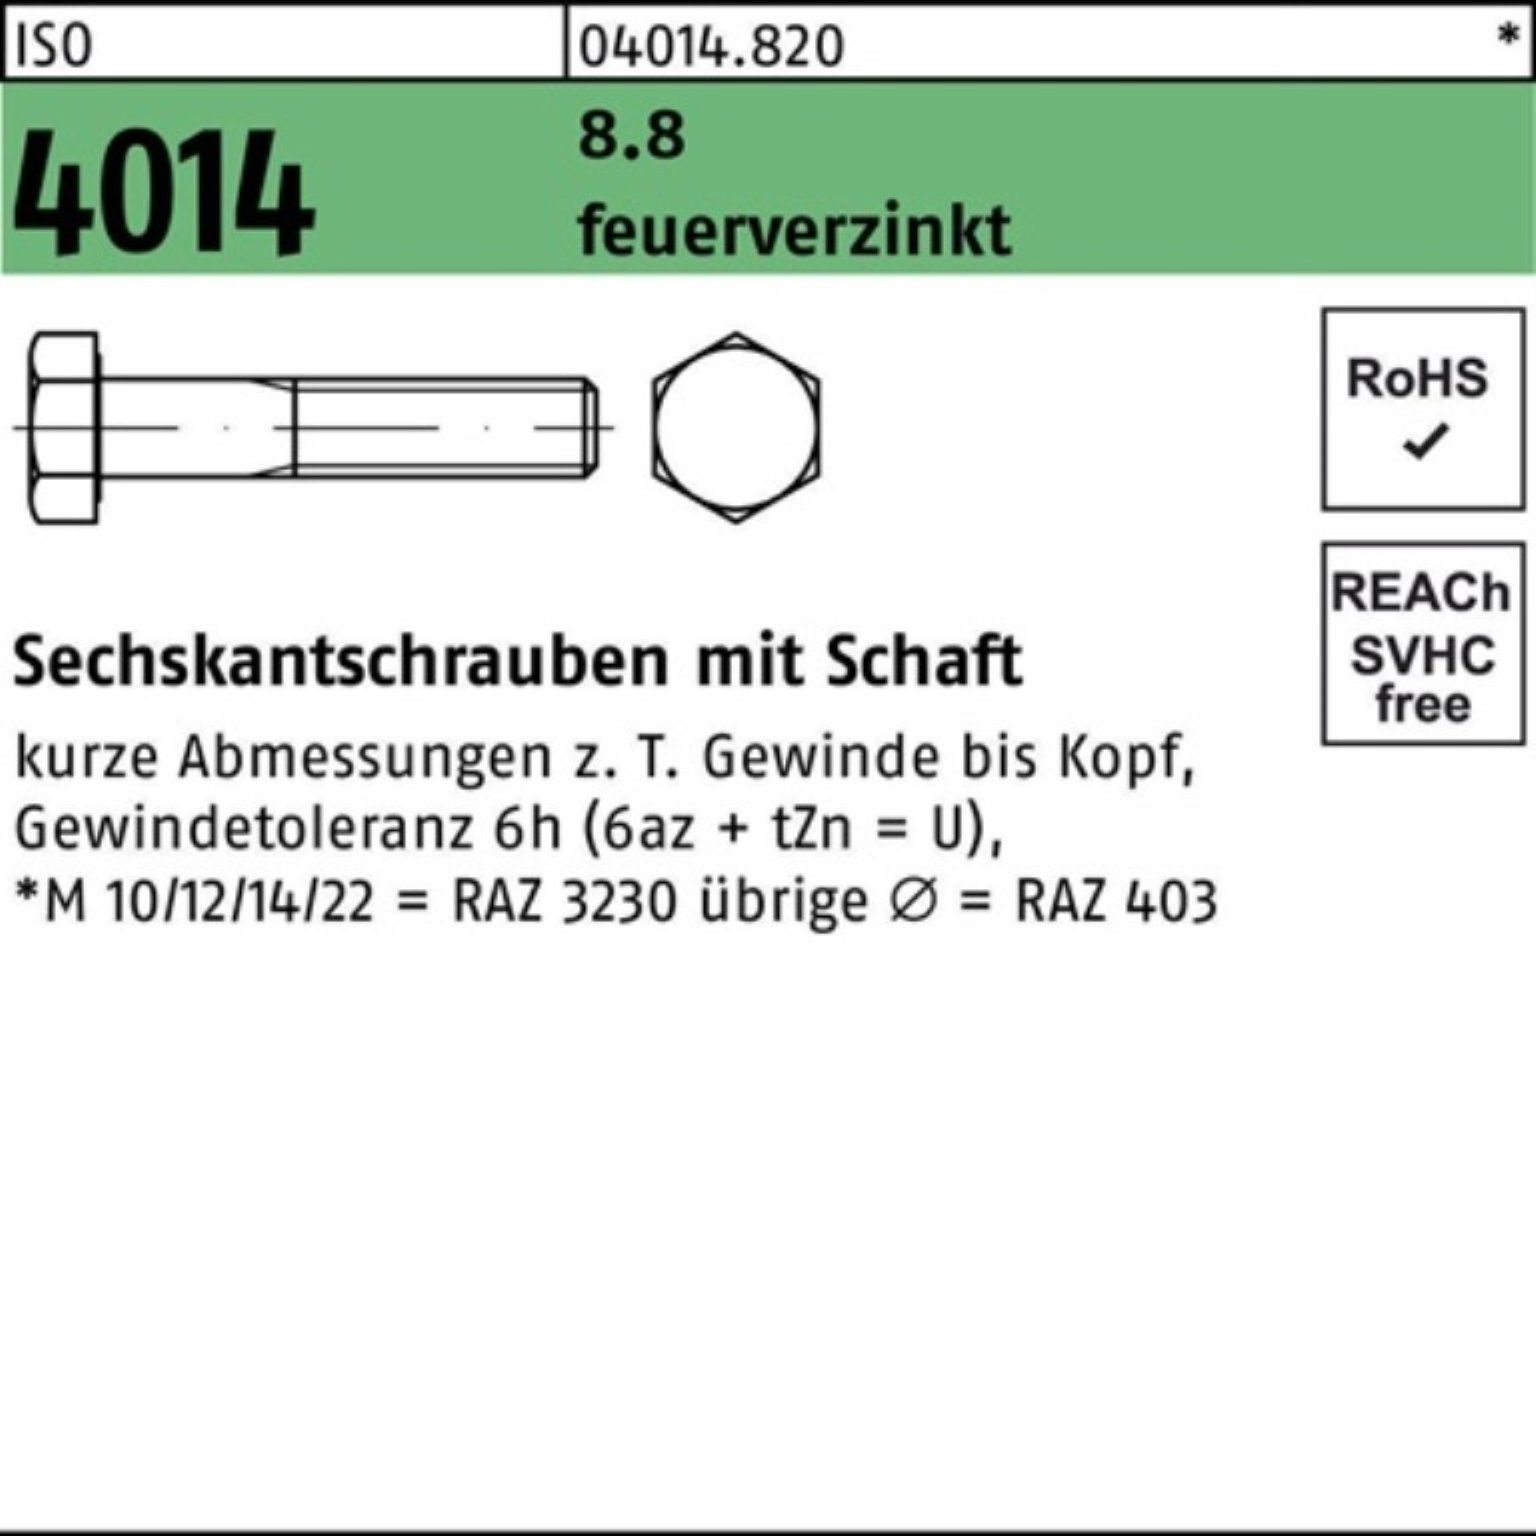 Schaft Bufab 100er Pack Sechskantschraube feuerverz. 4014 Sechskantschraube ISO M20x 2 100 8.8